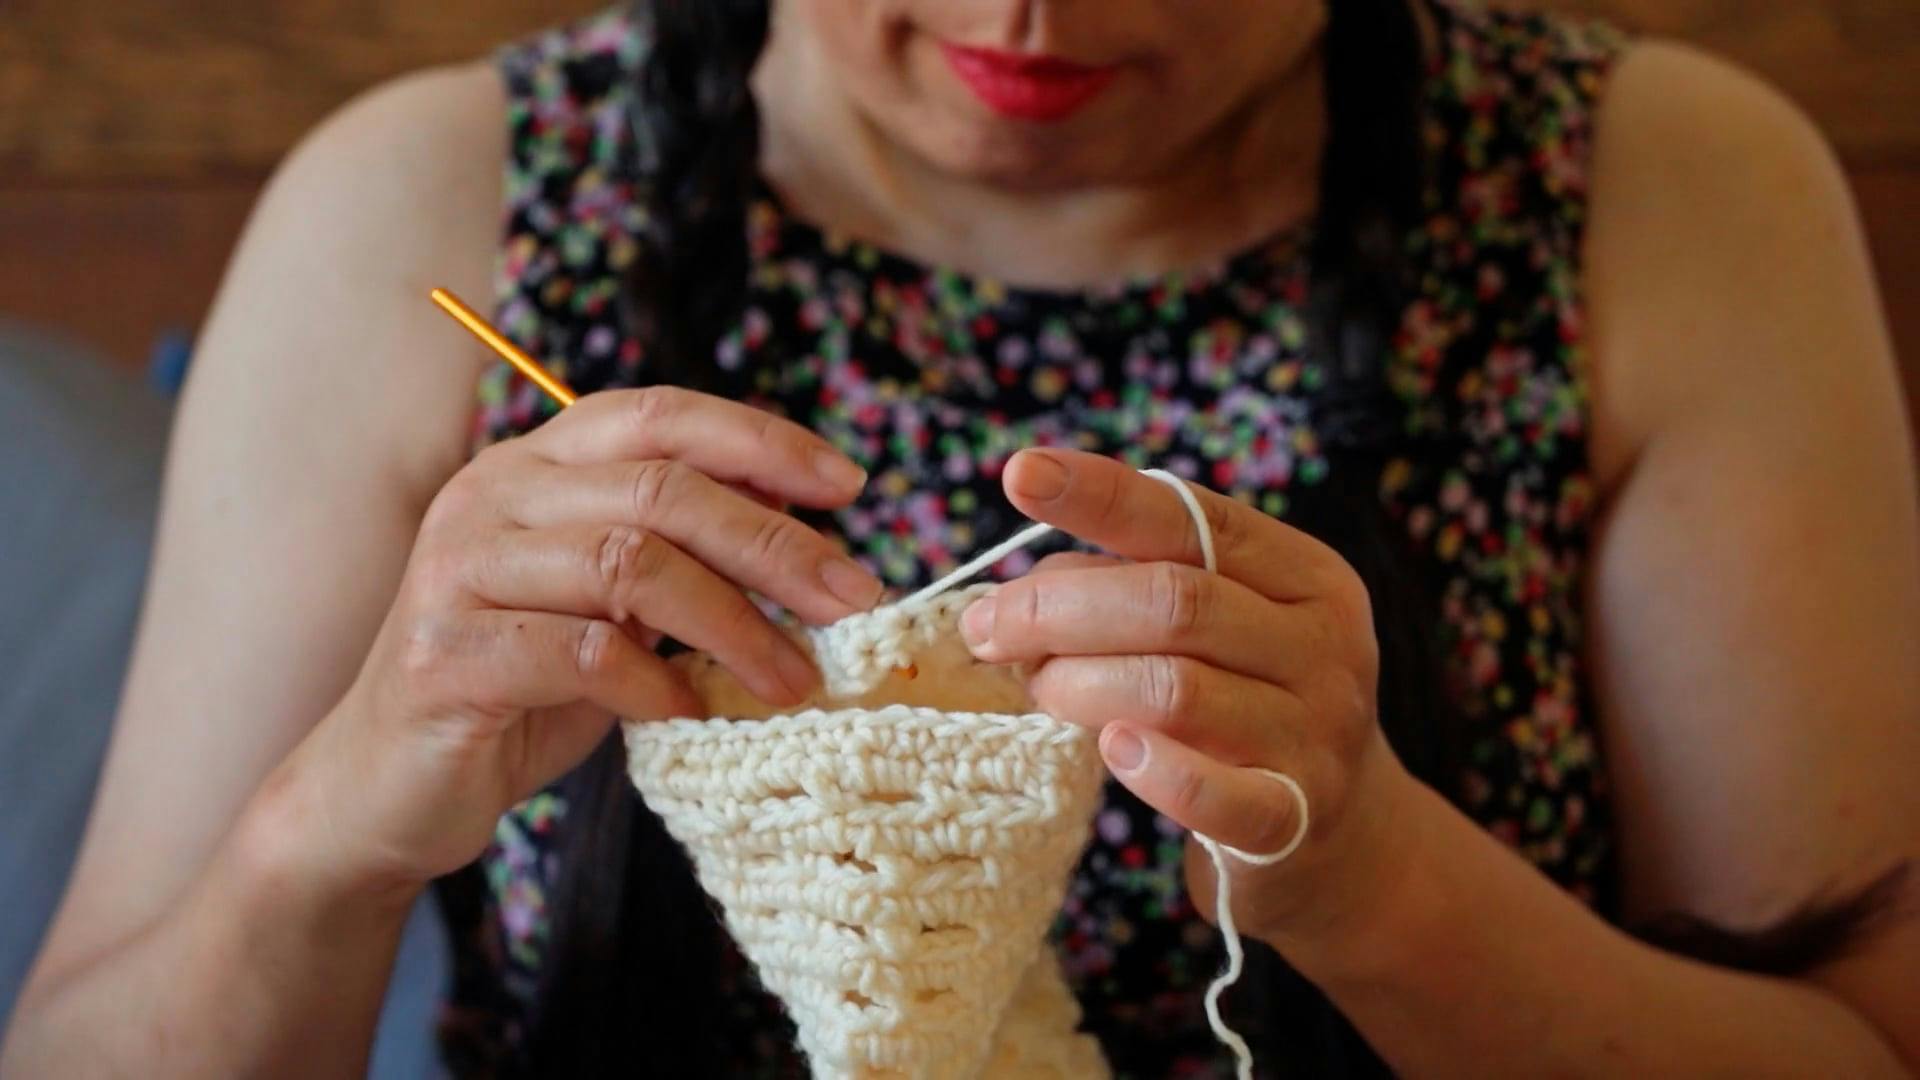 Knitting Using a Crochet Hook